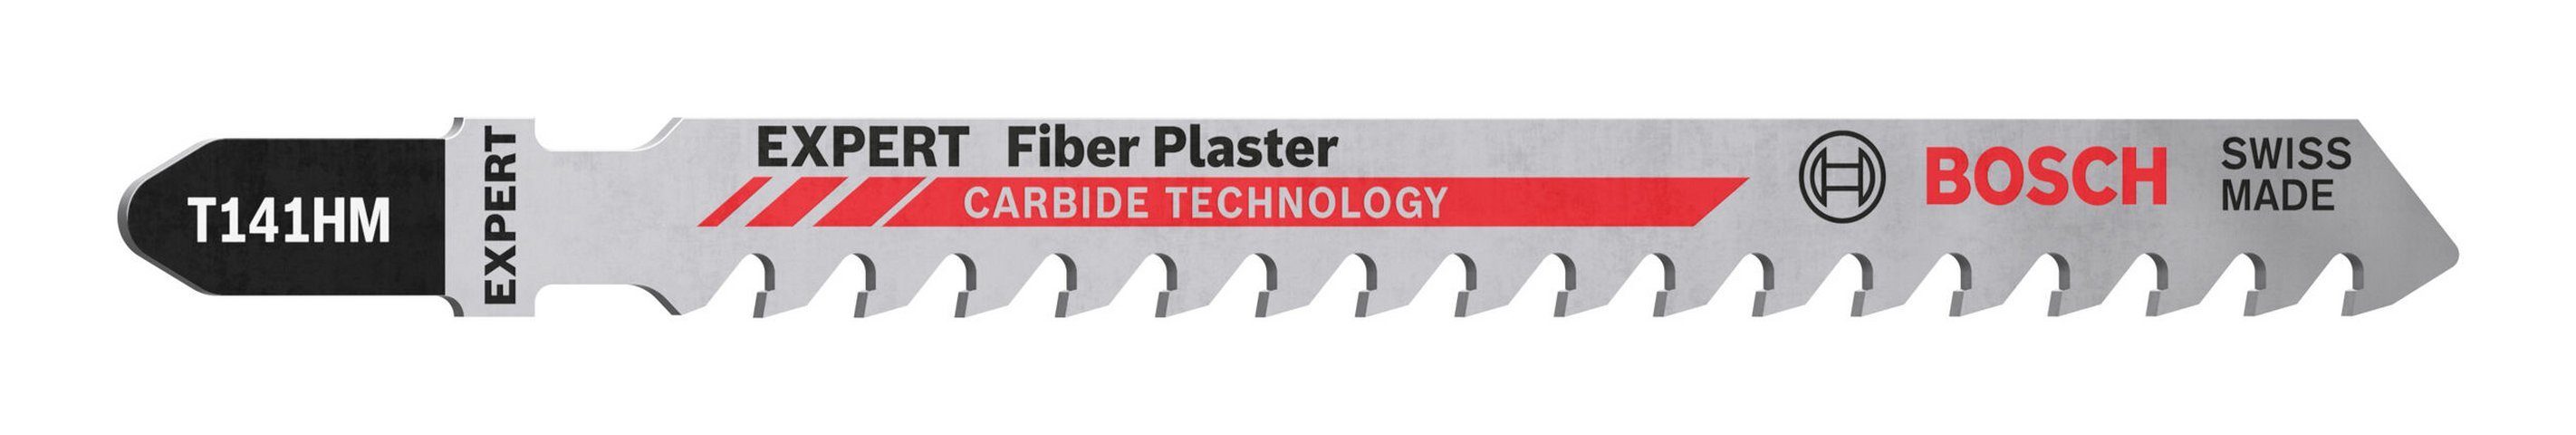 BOSCH Stichsägeblatt Expert Fiber Plaster (3 Stück), Expert T 141 HM Special for Fibre and Plaster - 3er-Pack